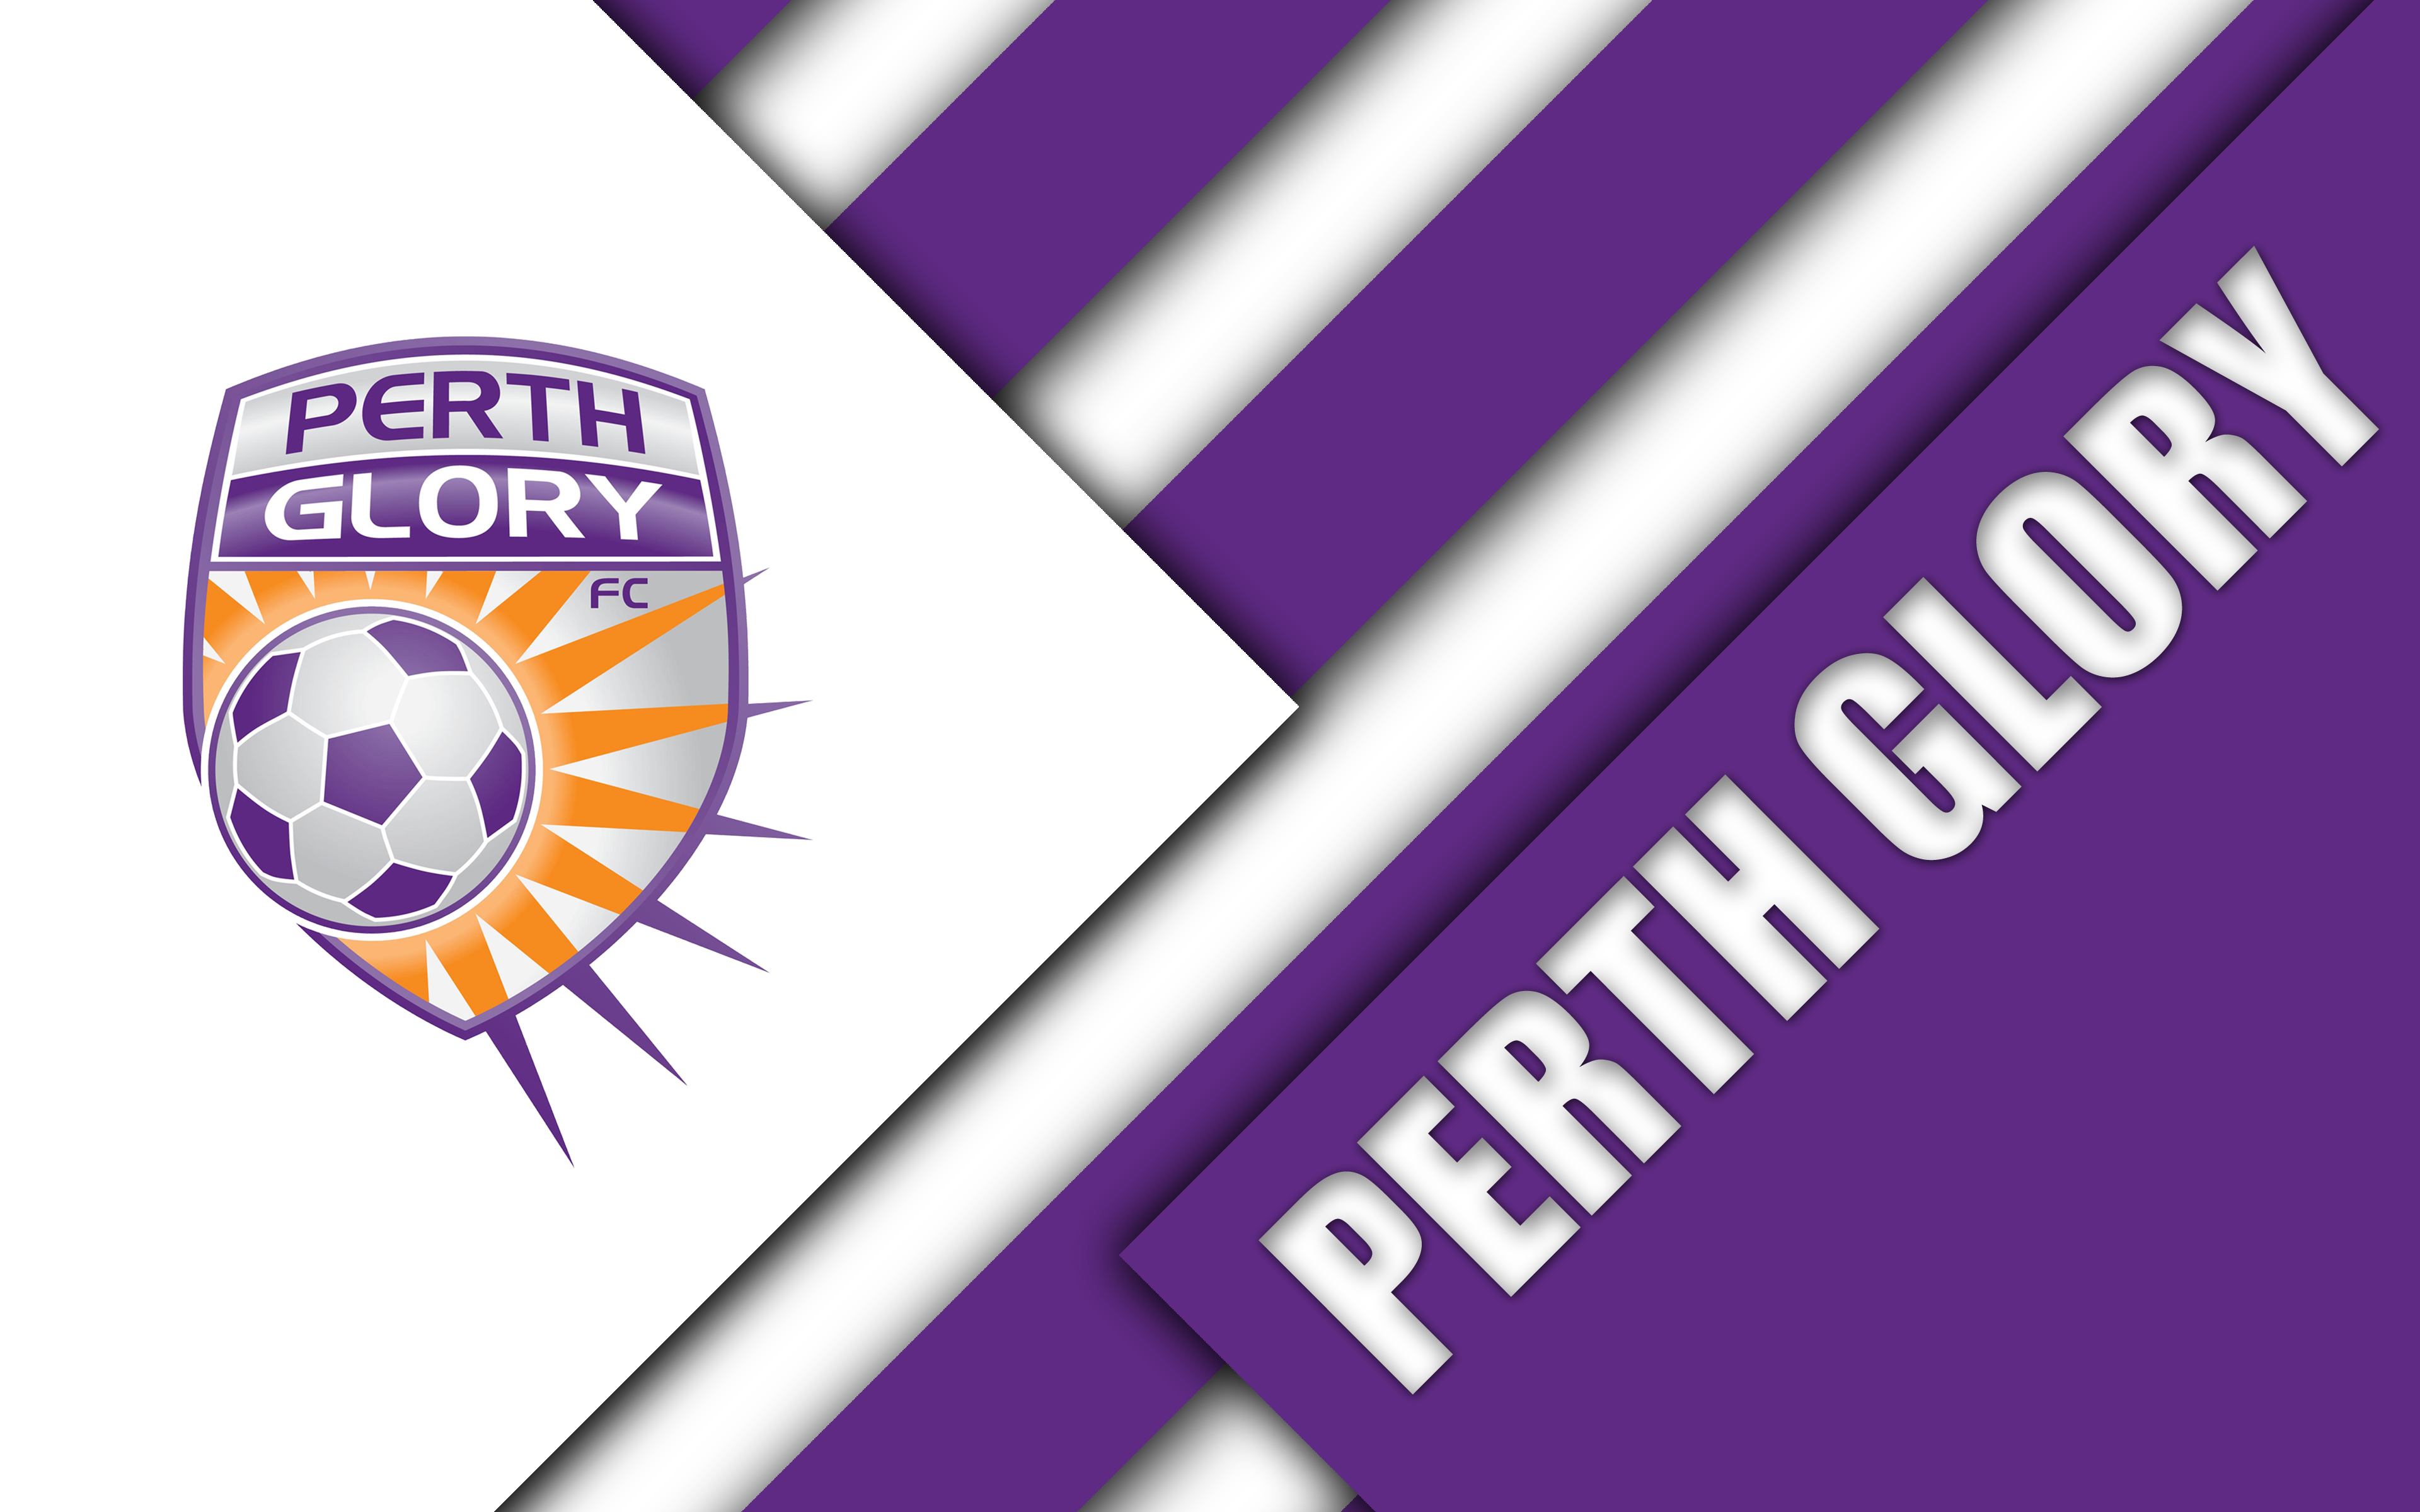 Perth glory fc